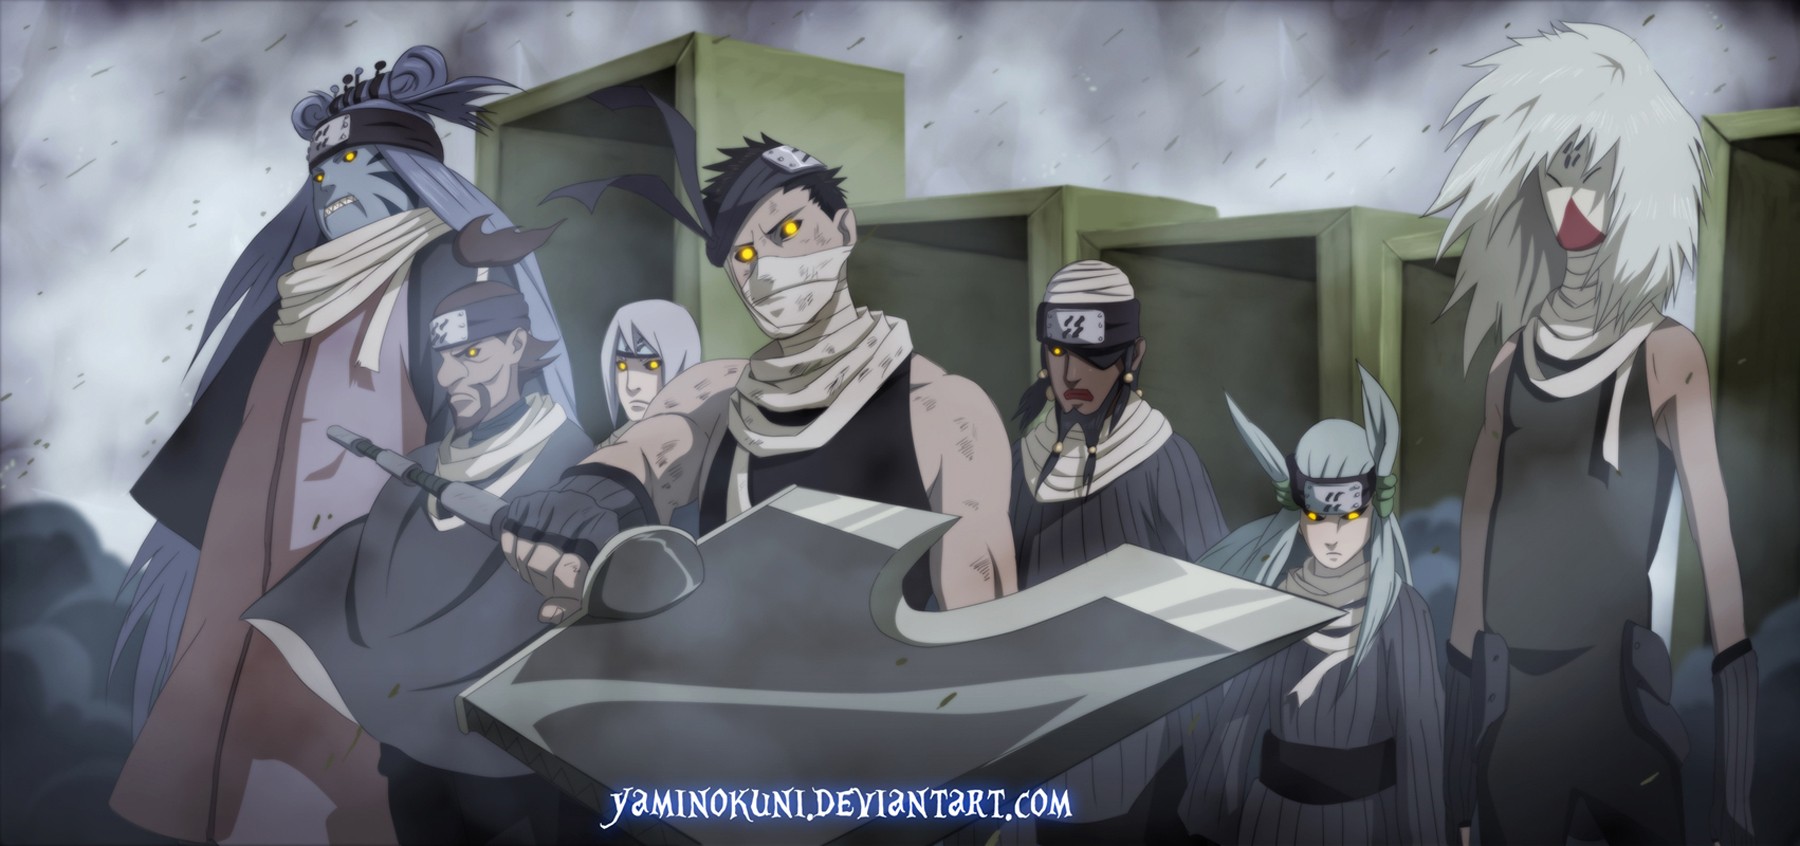 Seven Ninja Swordsmen of the Mist by yaminokuni